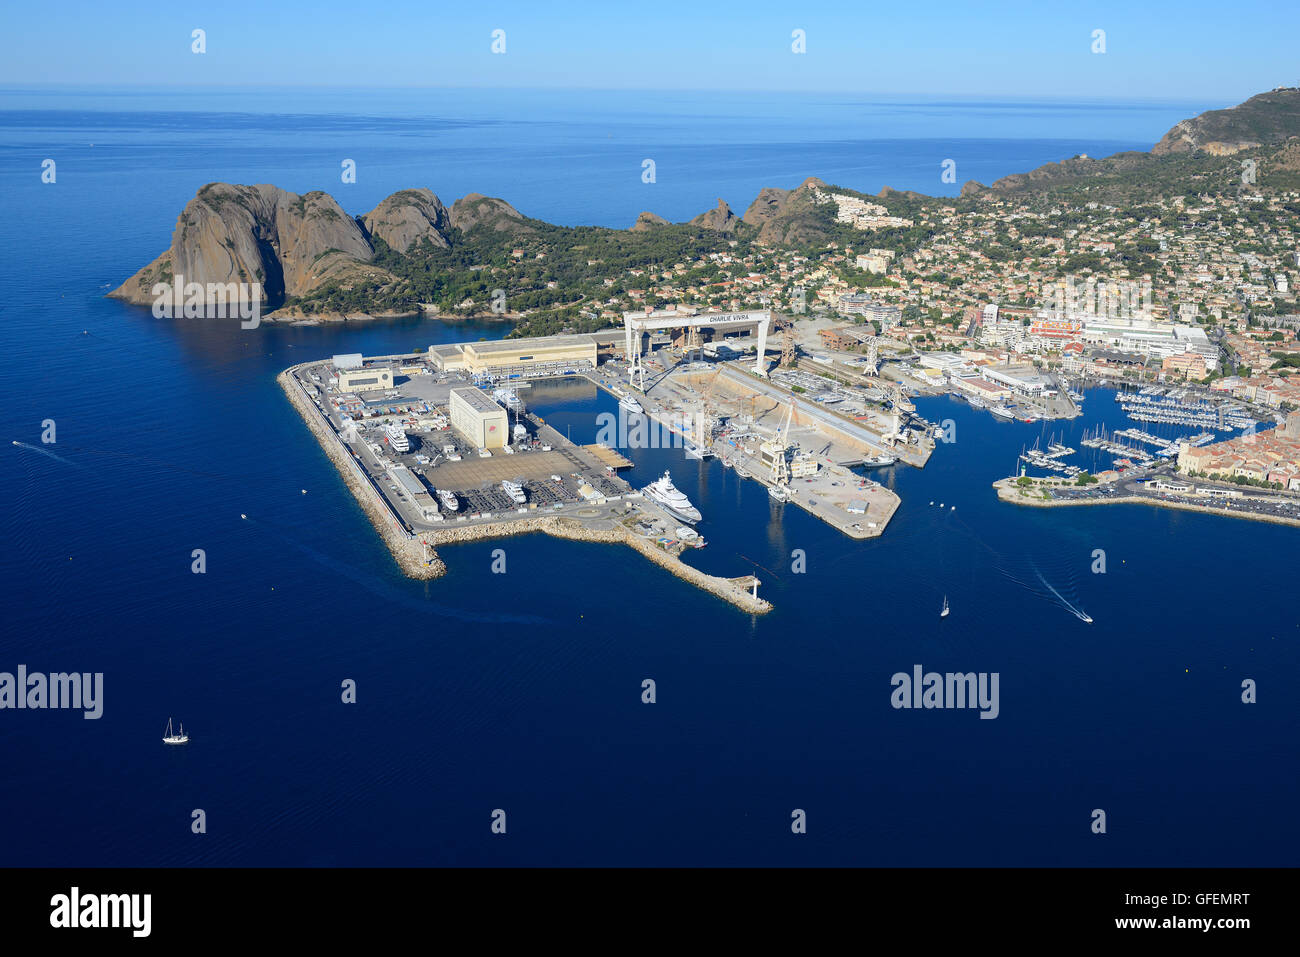 LUFTAUFNAHME. Moderne Werft und die alte Marina von La Ciotat. Bouches-du-Rhône, Provence, Frankreich. Stockfoto